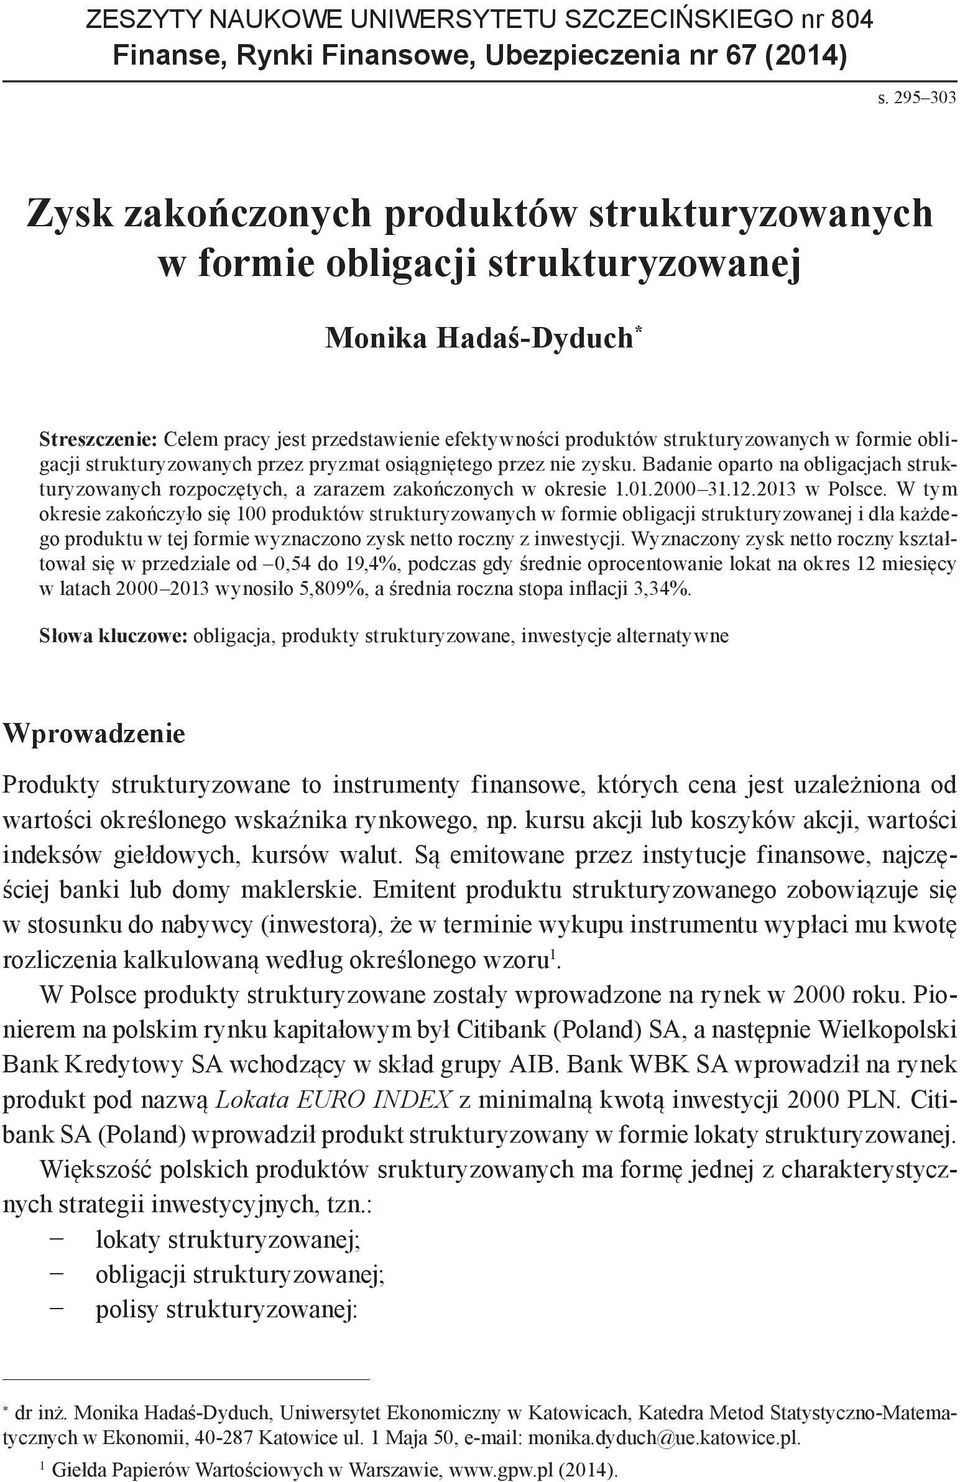 przez pryzmat osiągniętego przez nie zysku. Badanie oparto na obligacjach strukturyzowanych rozpoczętych, a zarazem zakończonych w okresie 1.01.2000 31.12.2013 w Polsce.